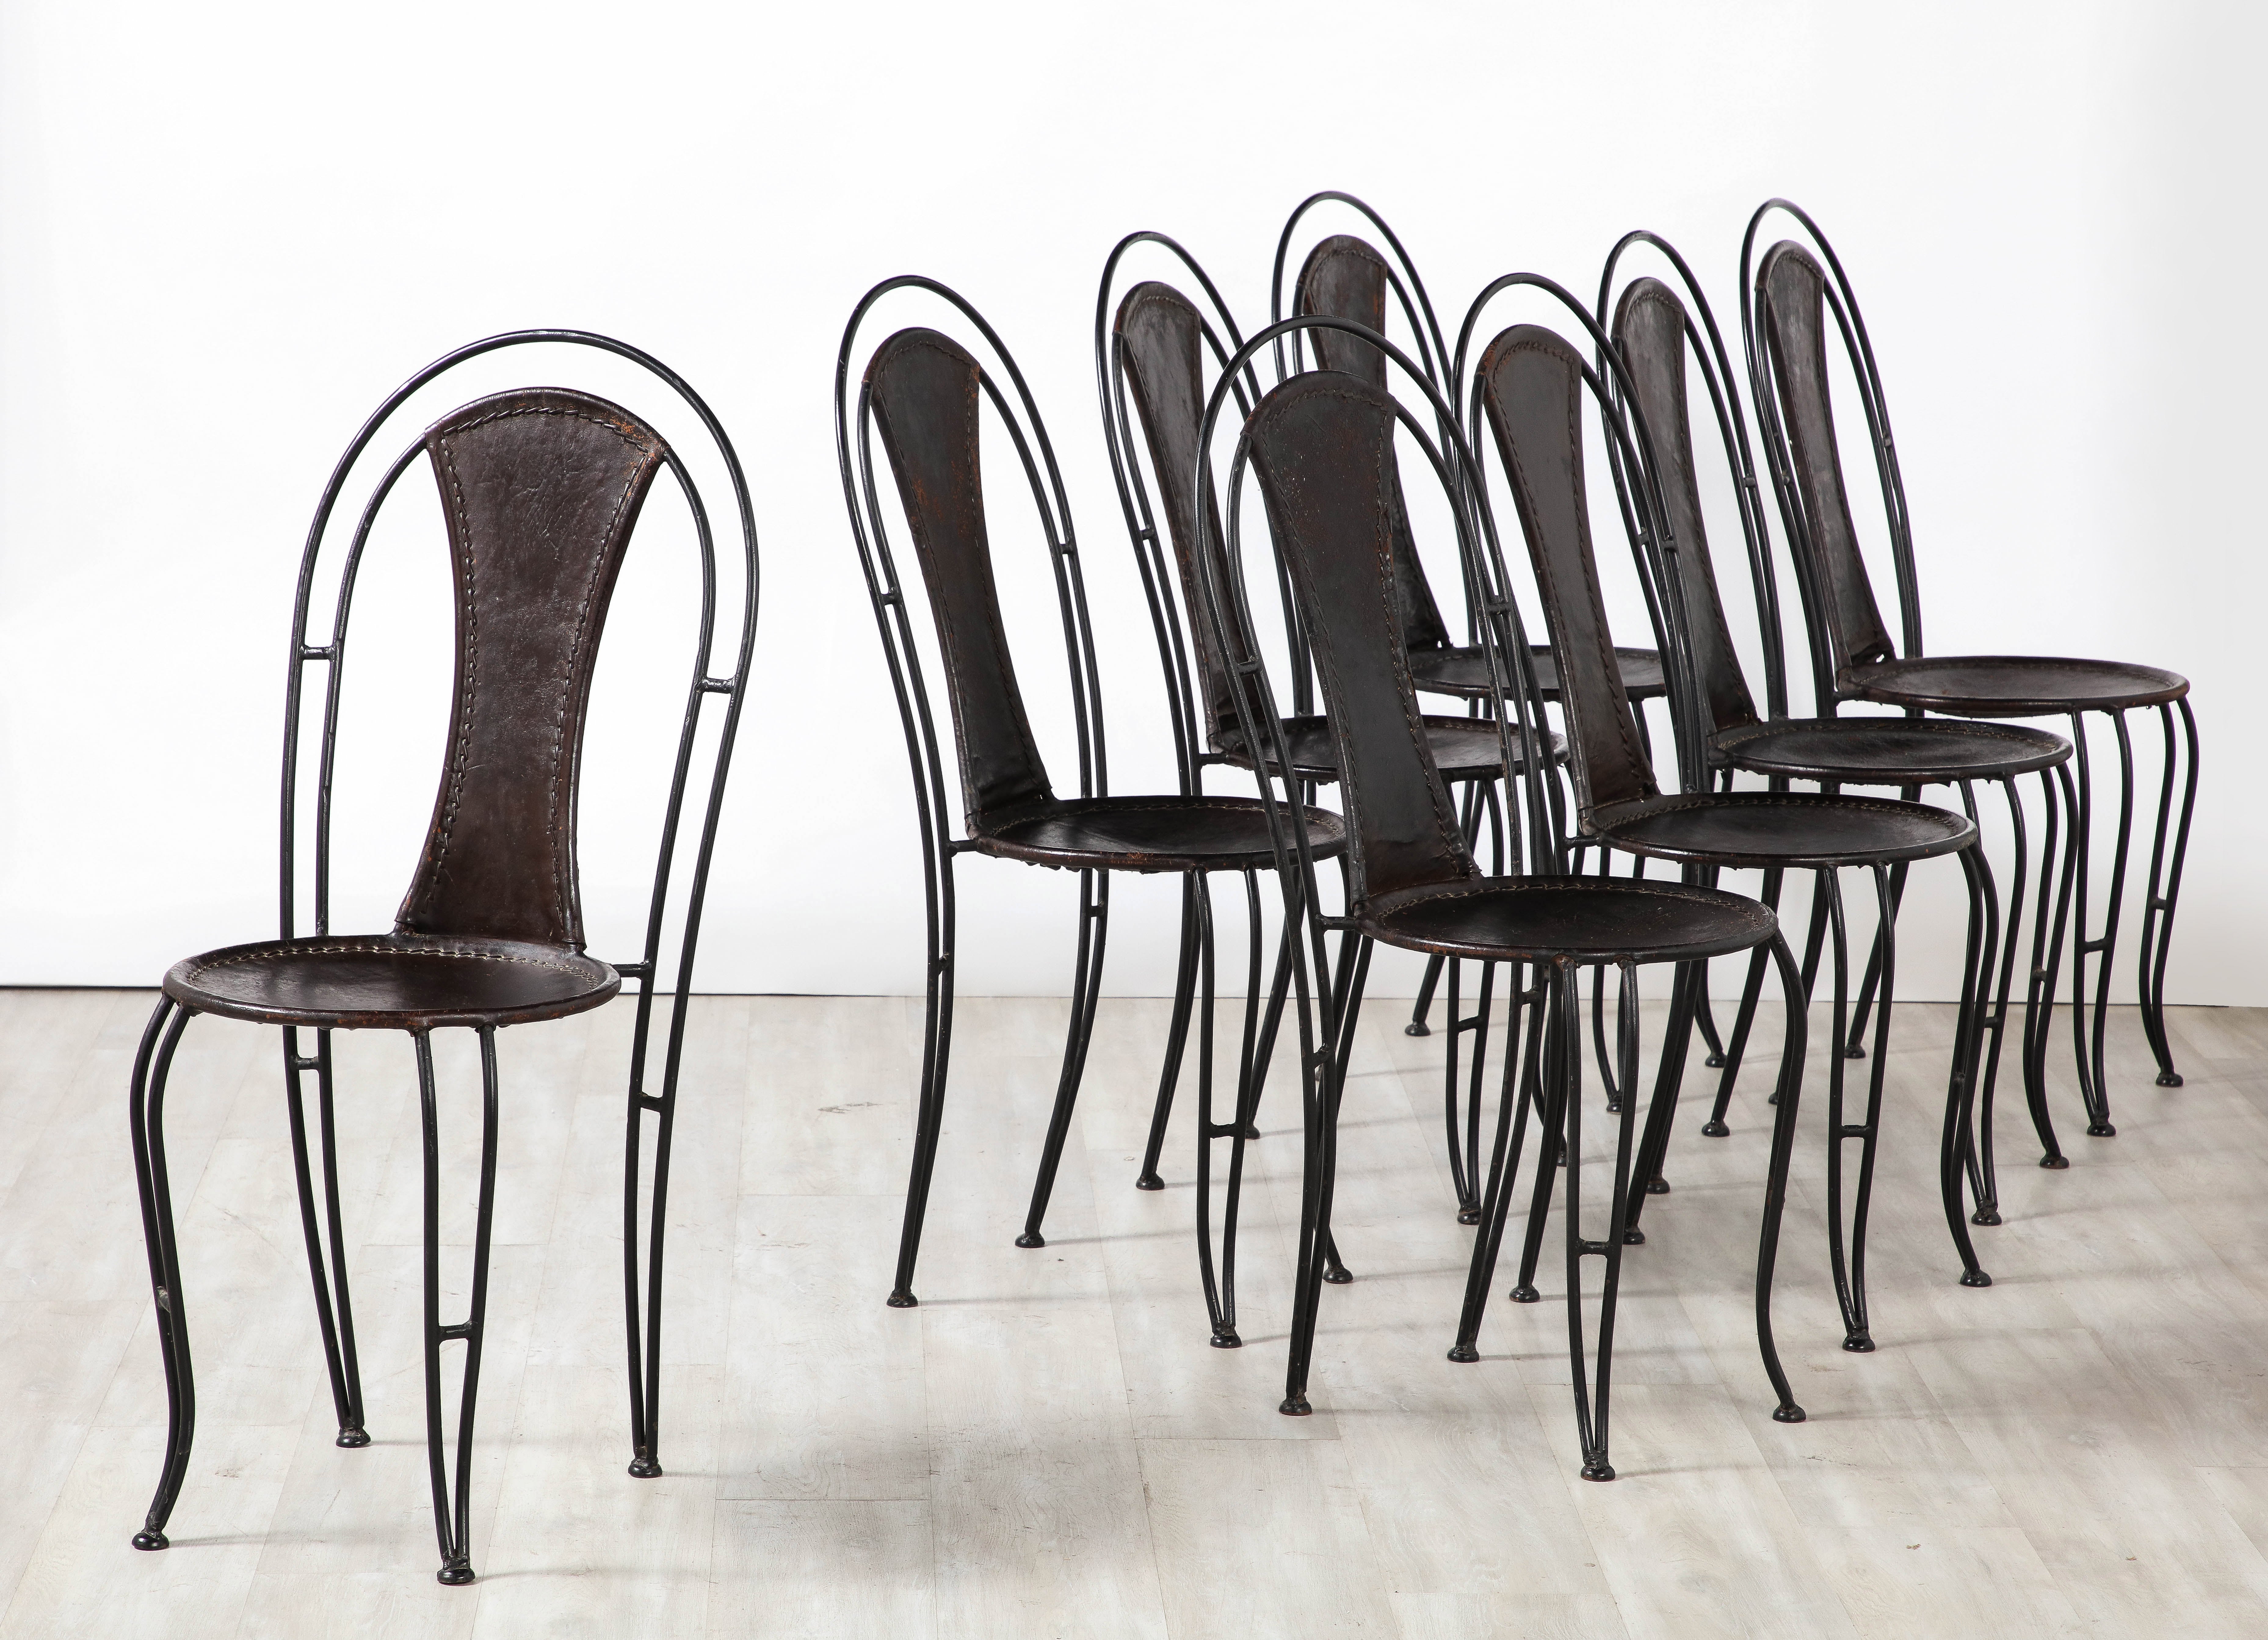 Un ensemble italien de huit chaises bistro/chaises à manger en cuir noir et métal. Les chaises sont très sculpturales avec des dossiers arqués, des sièges circulaires et des pieds à volutes fantaisistes. Le cuir noir cousu à la main est entièrement